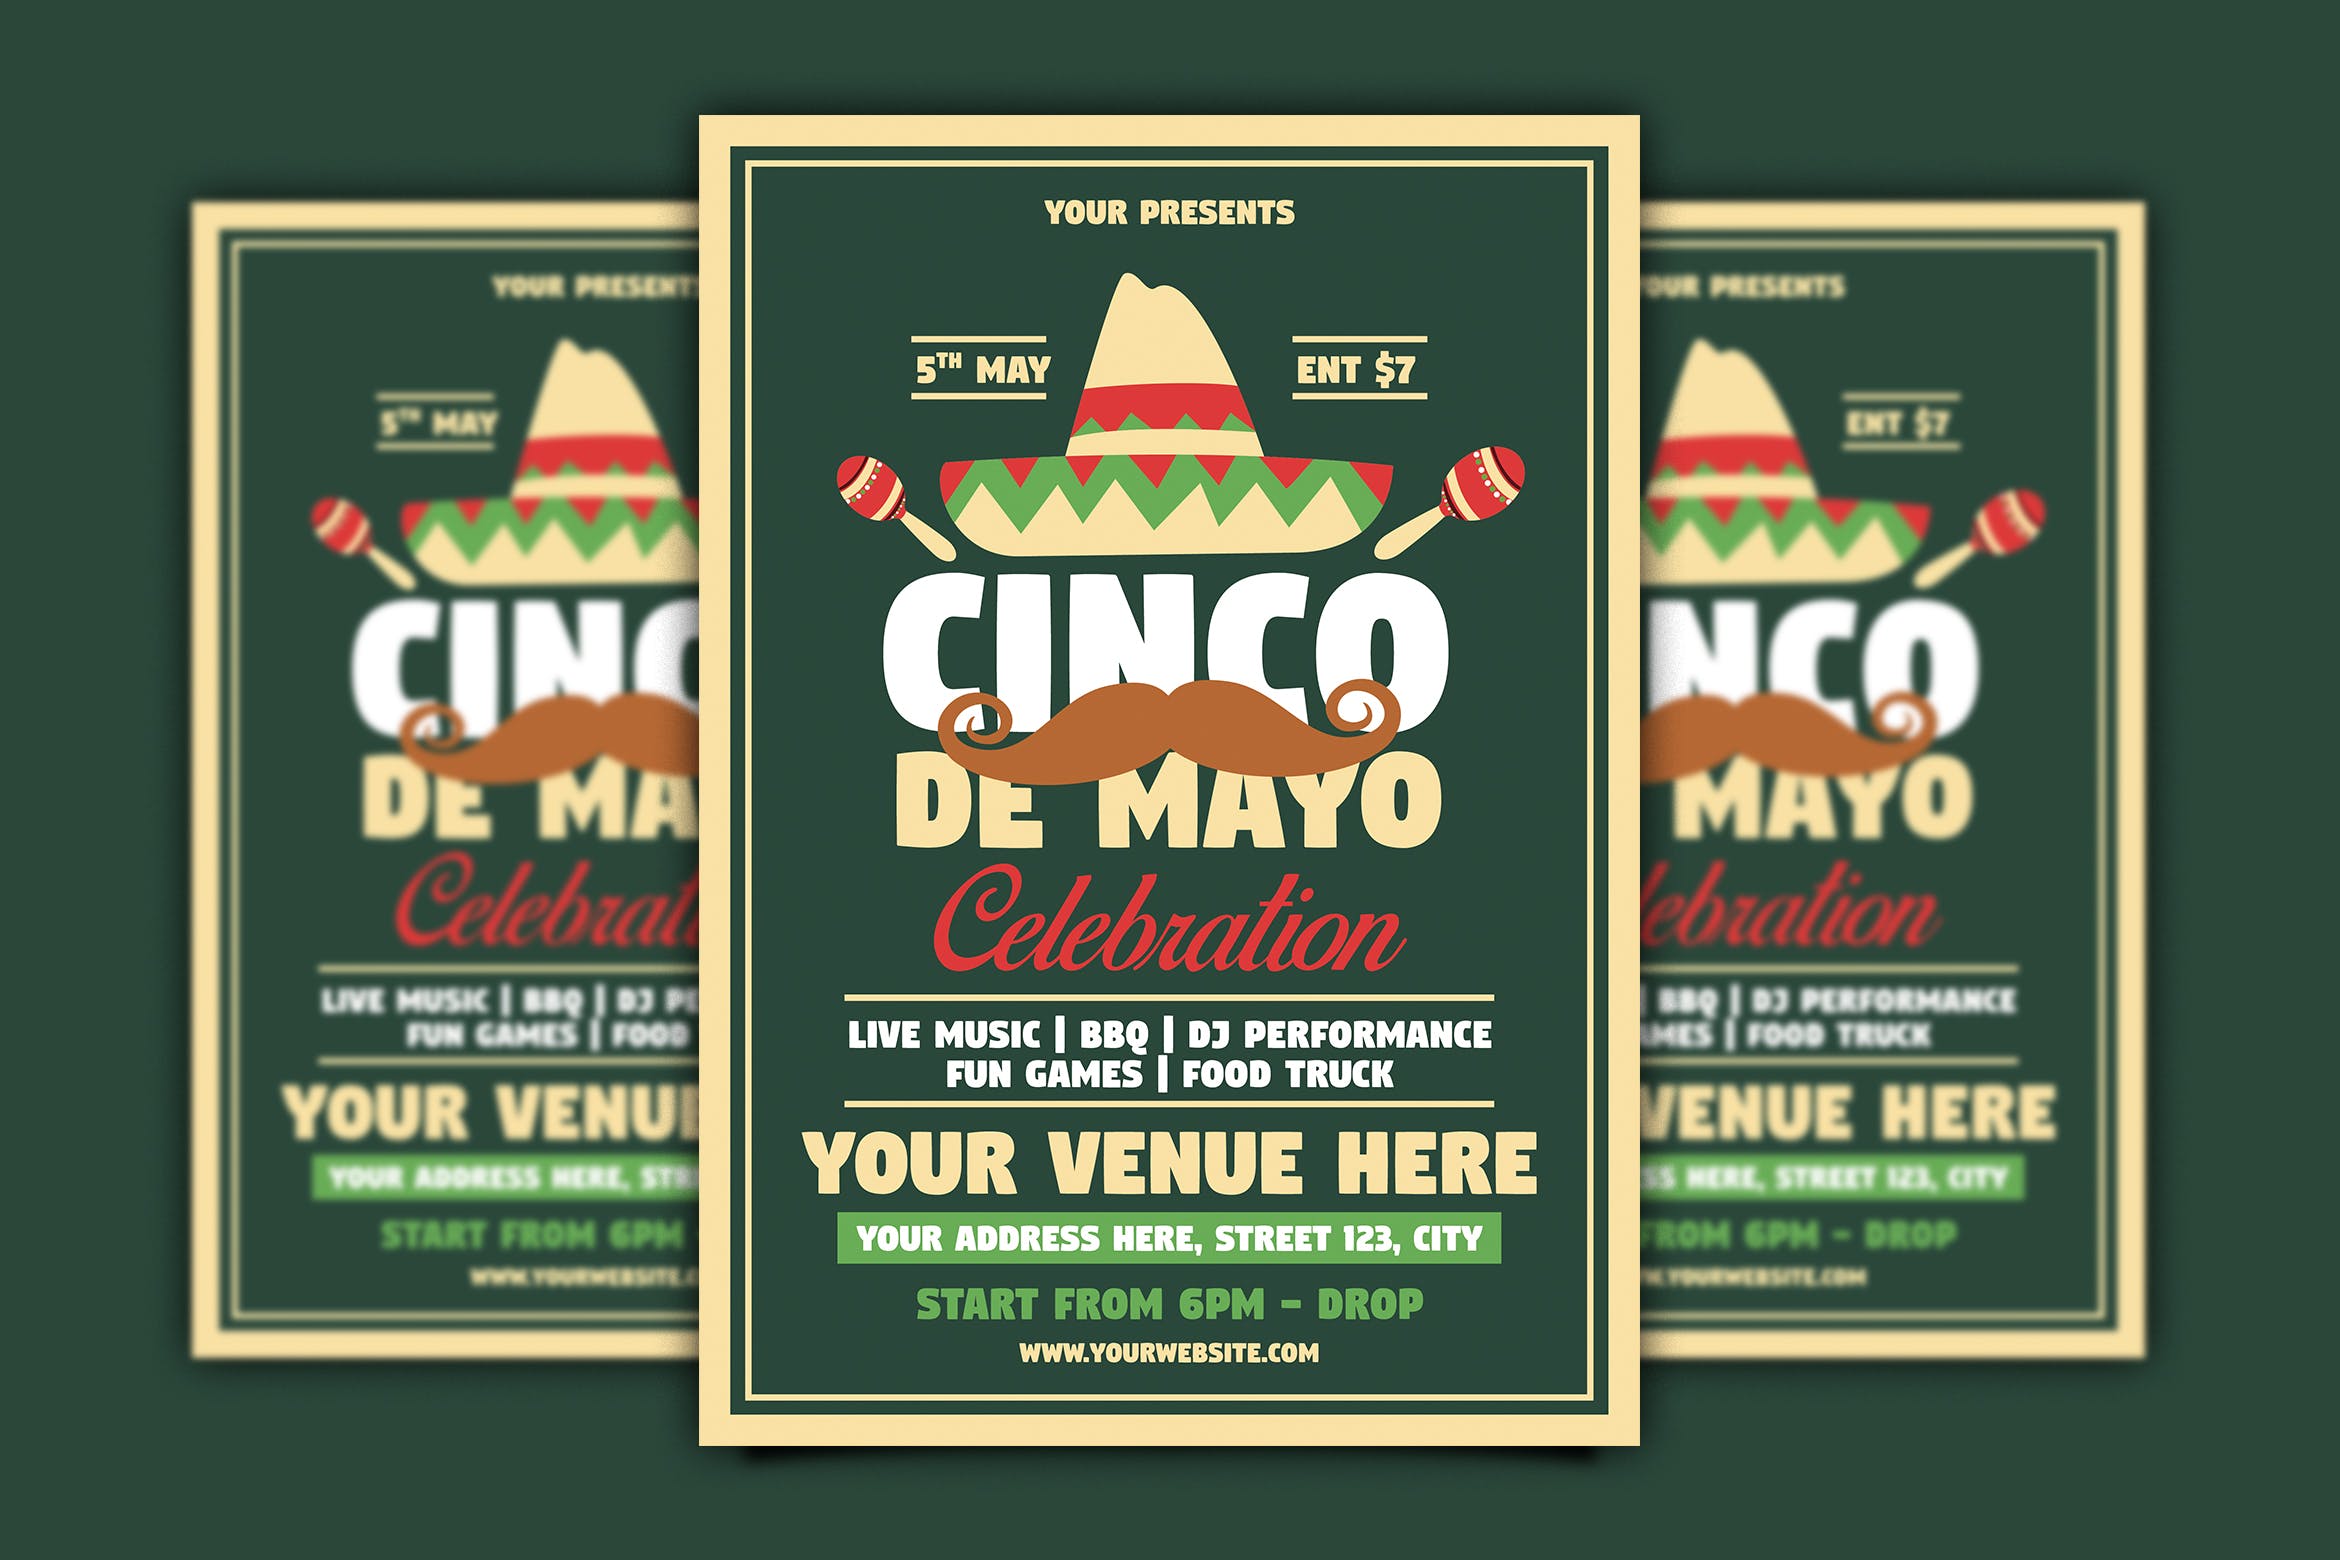 墨西哥五月五日节海报设计模板 Cinco De Mayo Celebration插图